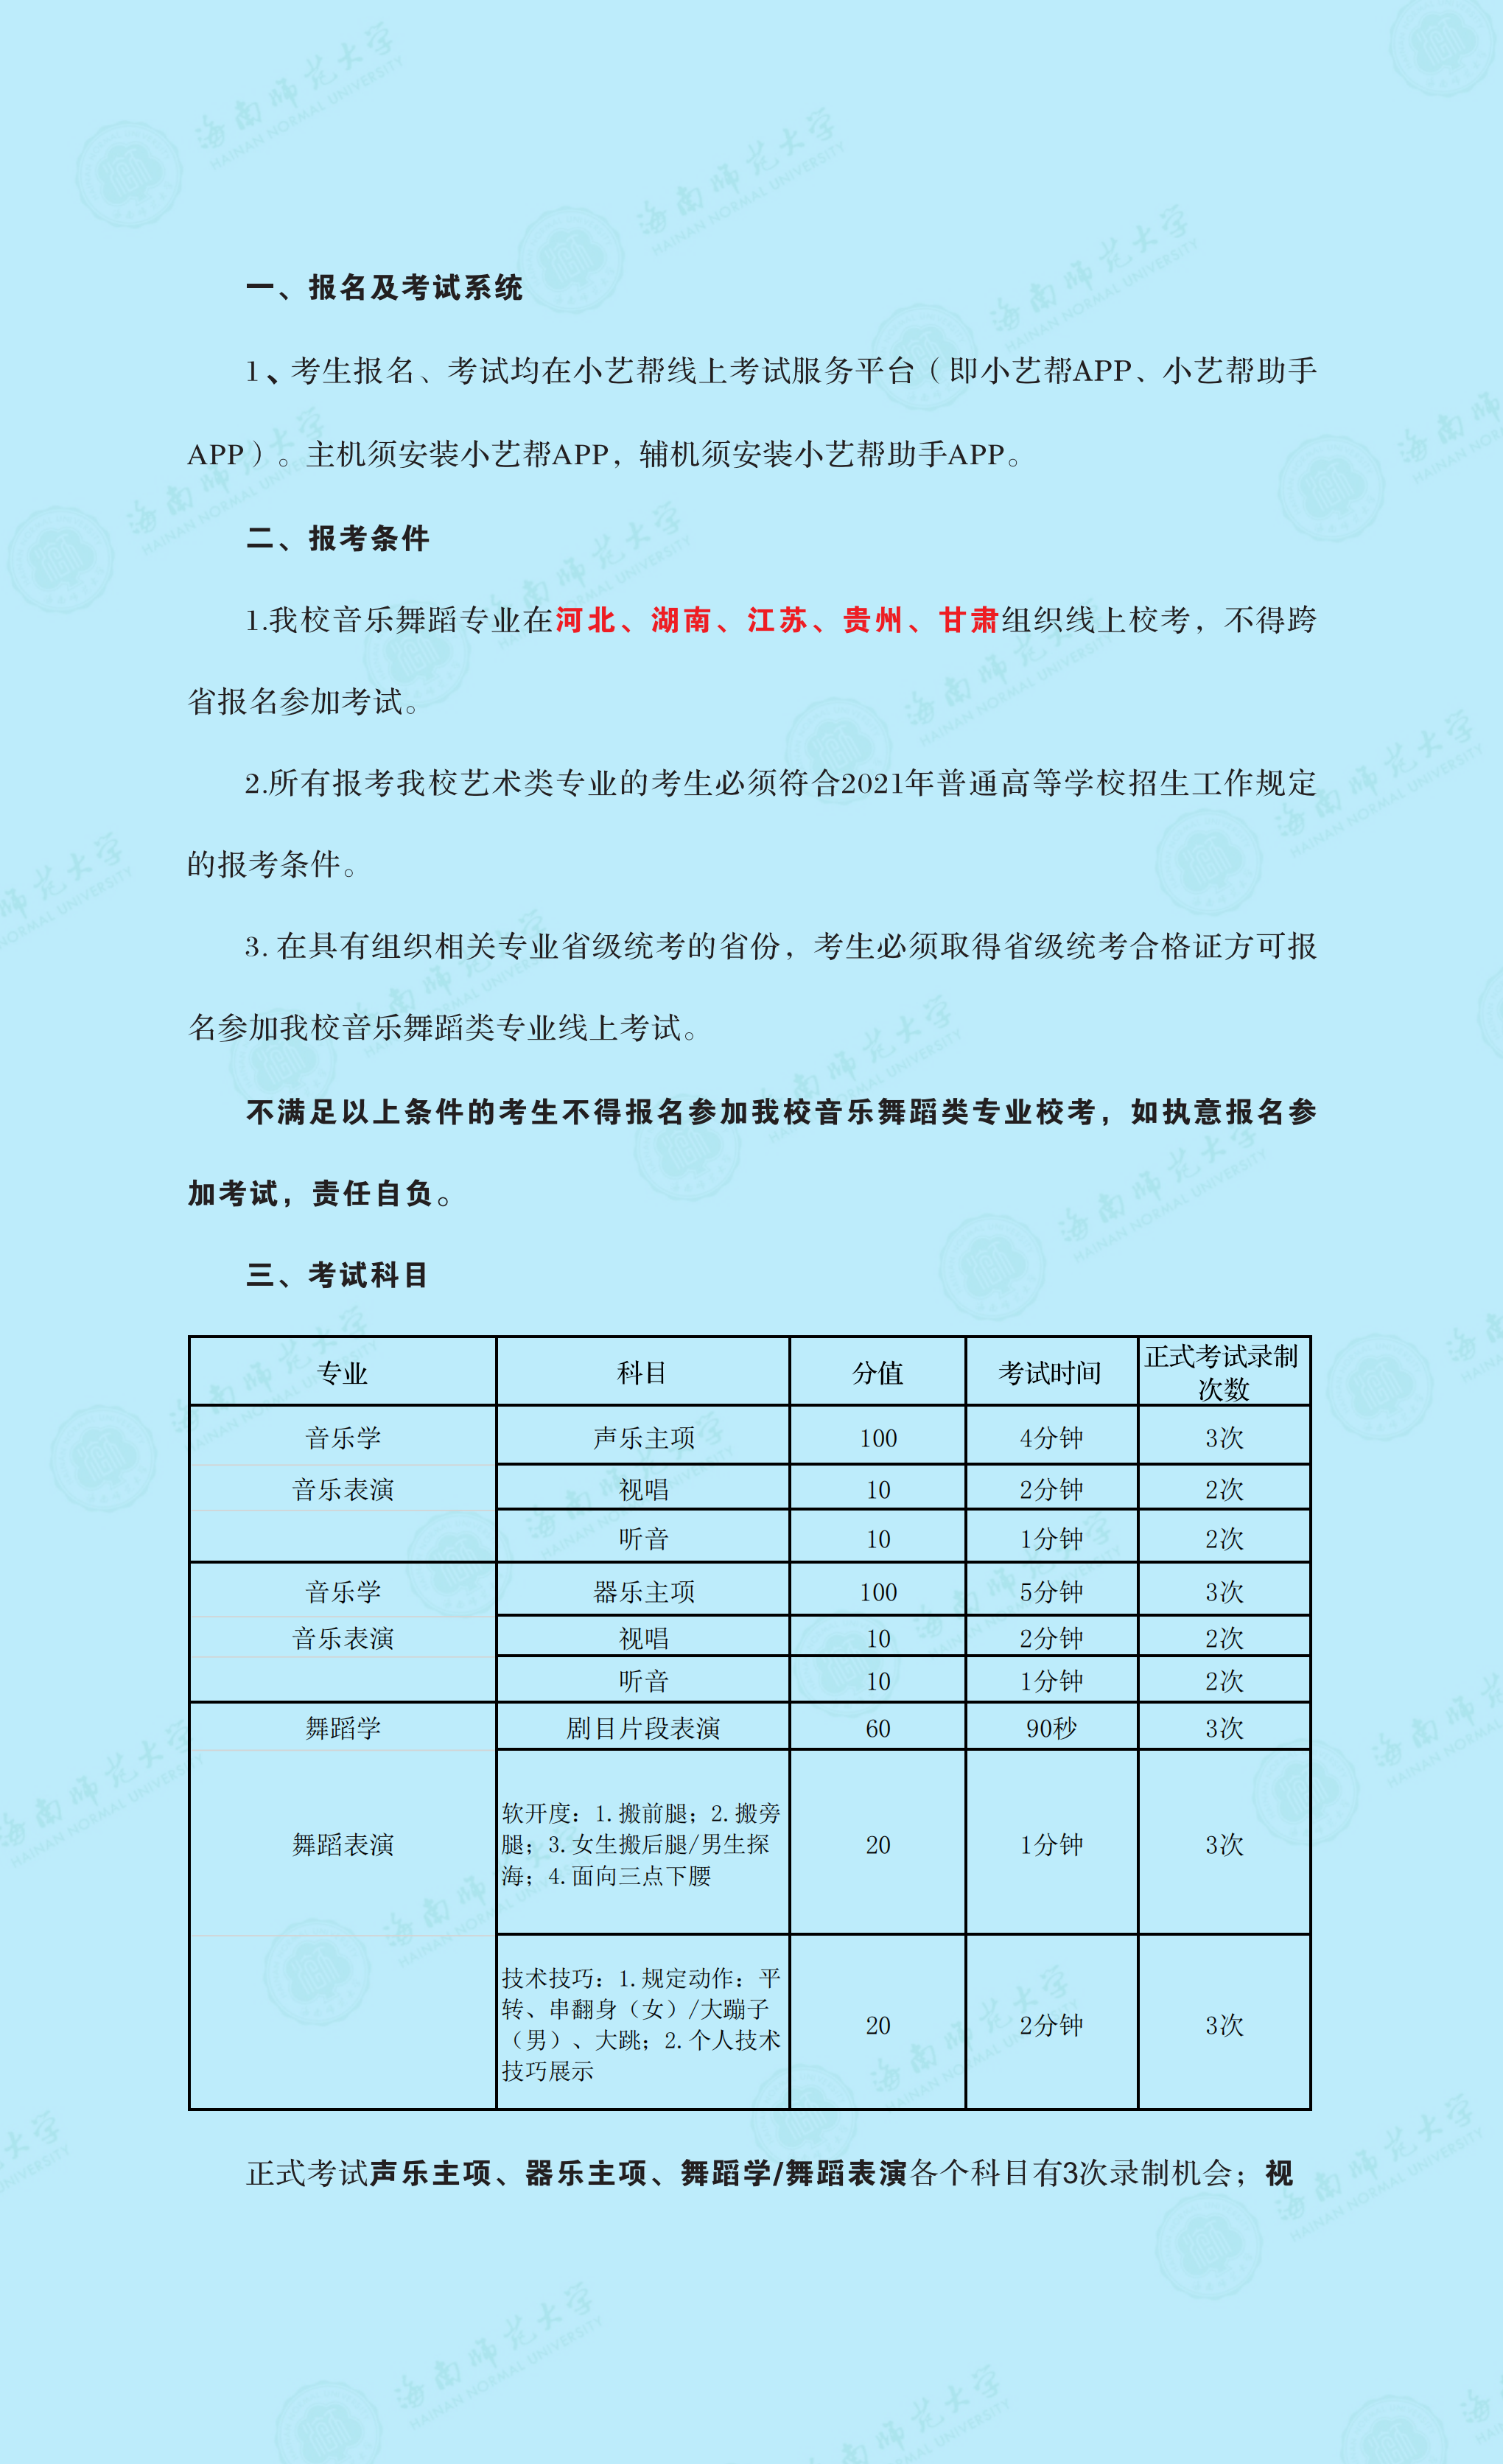 永利娱高ylg060net2021年音乐舞蹈类专业线上考试公告